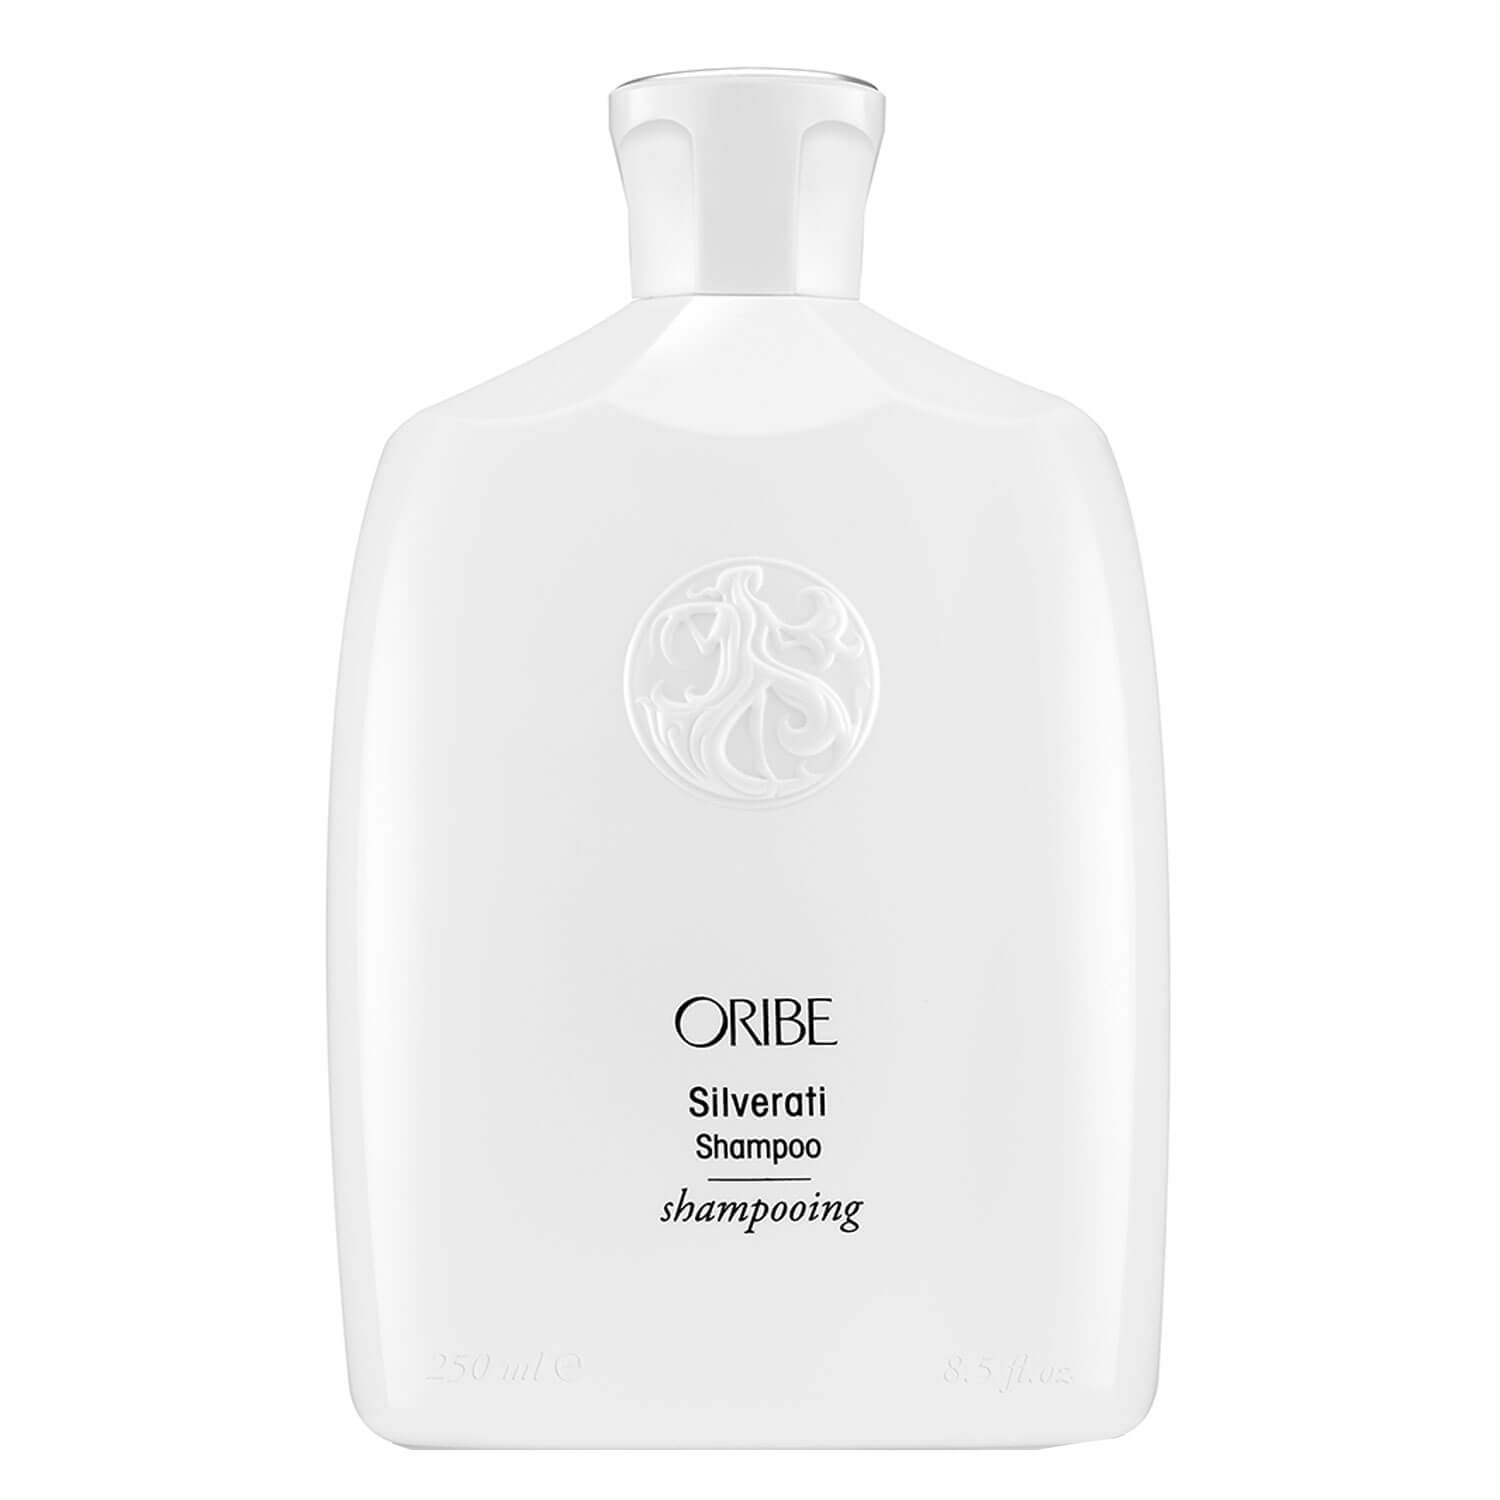 Produktbild von Oribe Care - Silverati Shampoo